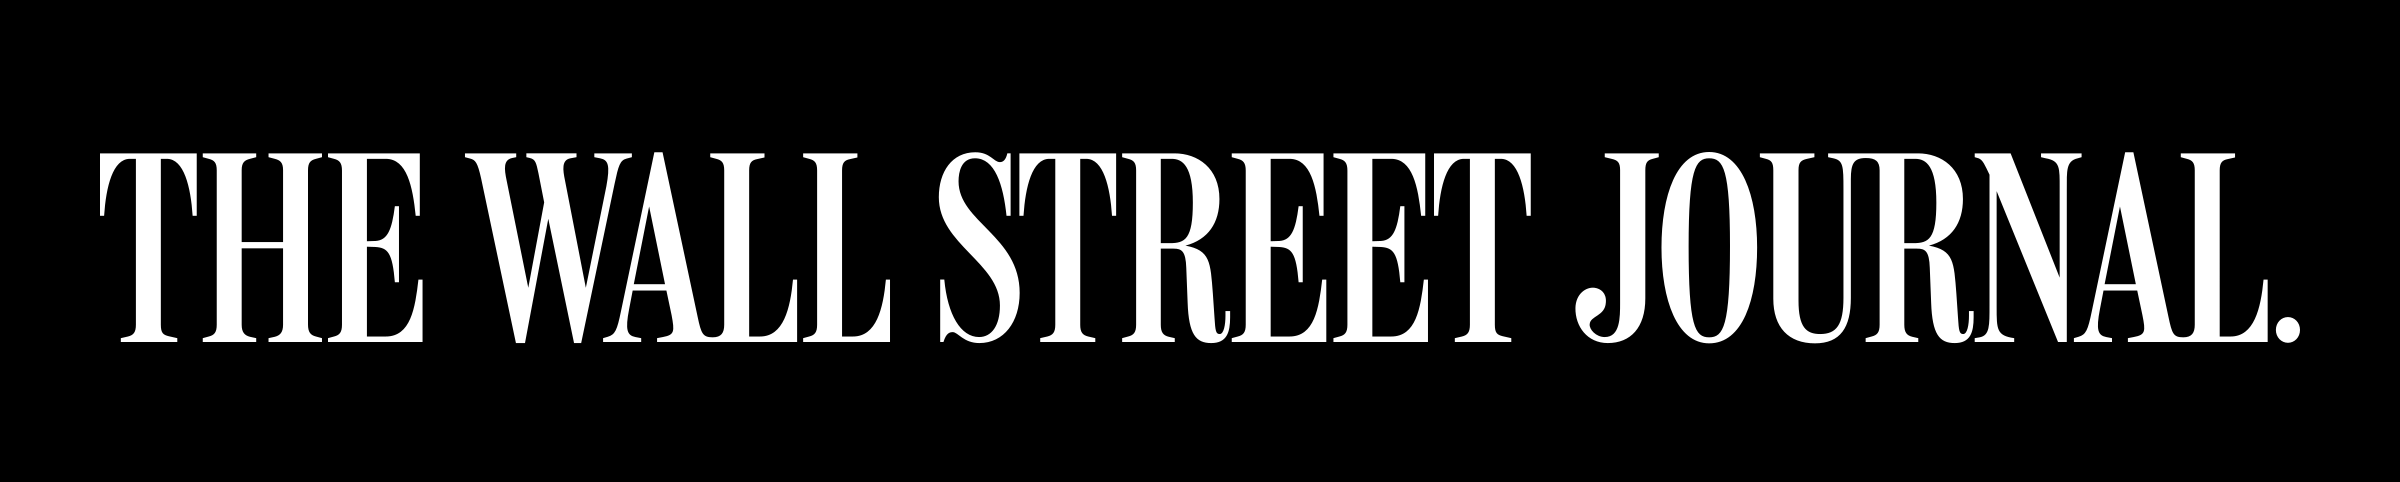 wall_street_journal_logo.png